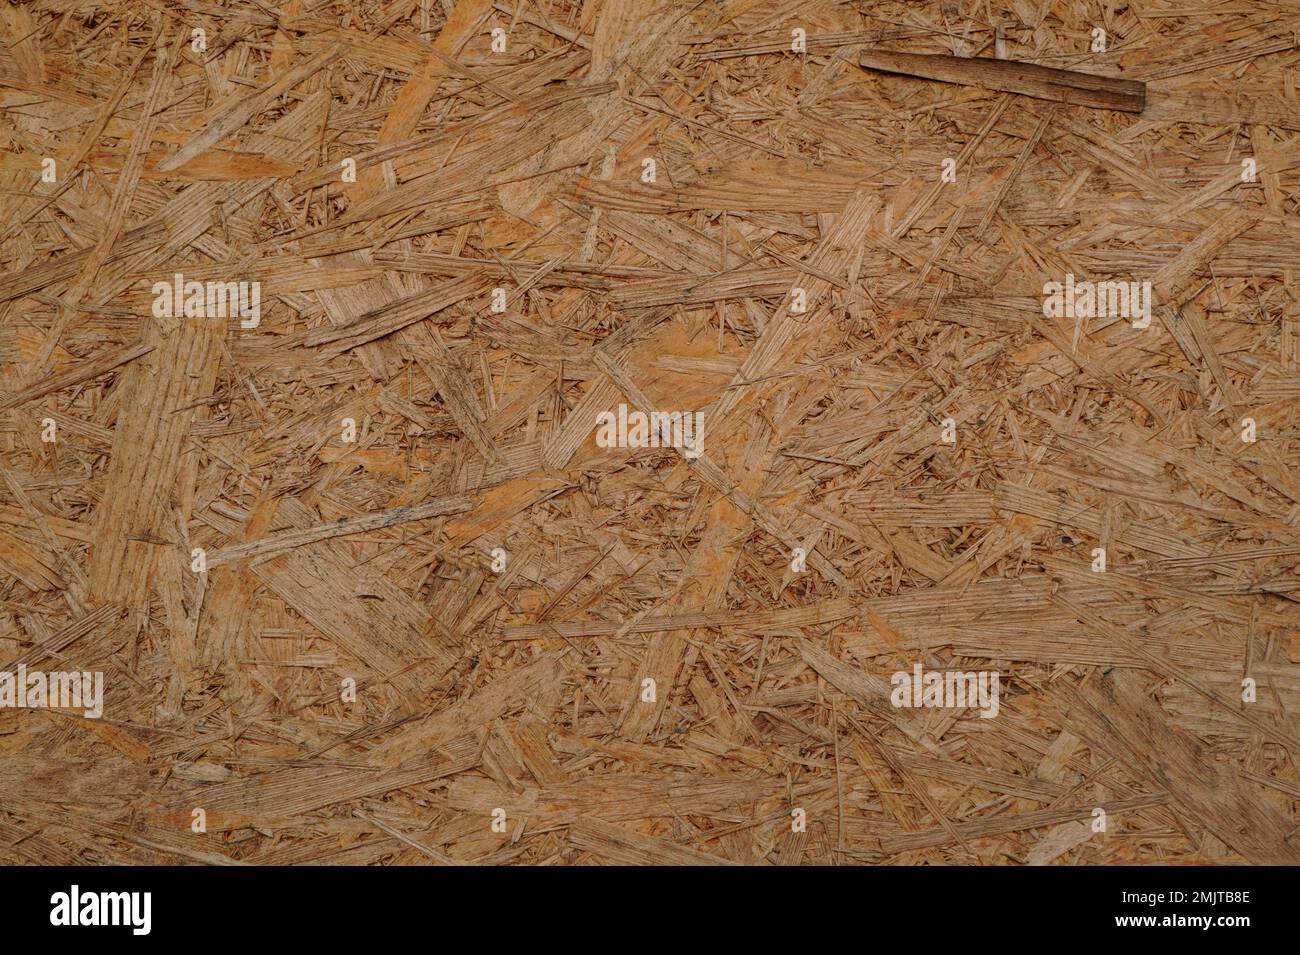 Primo piano del materiale da costruzione OSB (Oriented Strand Board). Sfondo texture ruvida. Foto Stock